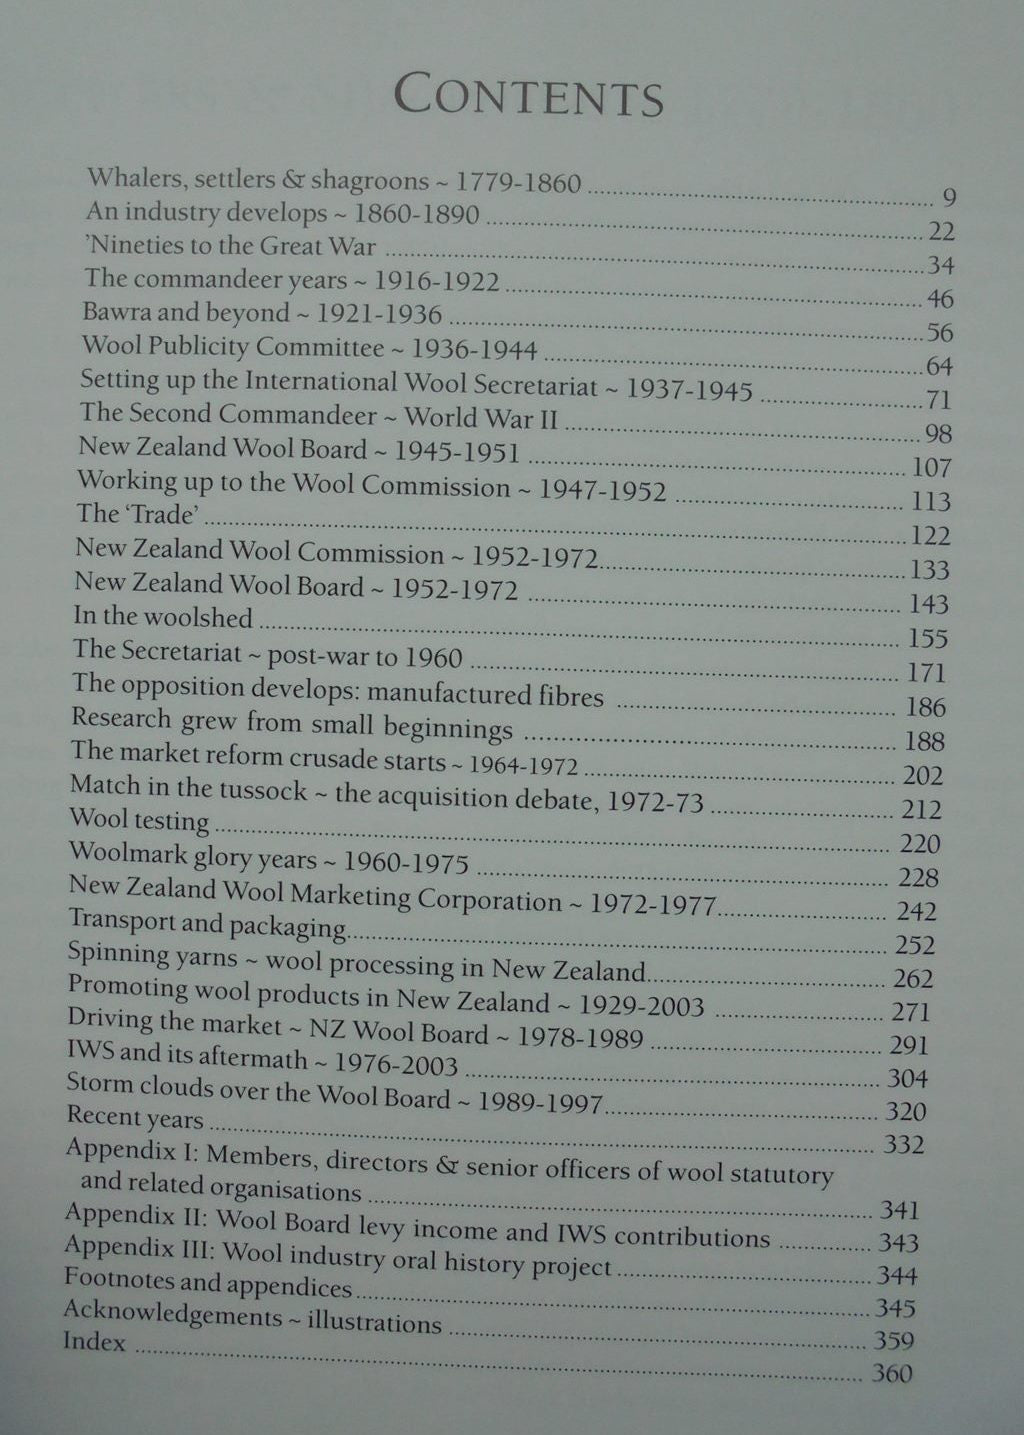 Wool: A History of New Zealand's Wool Industry. By Bill Carter & John MacGibbon.